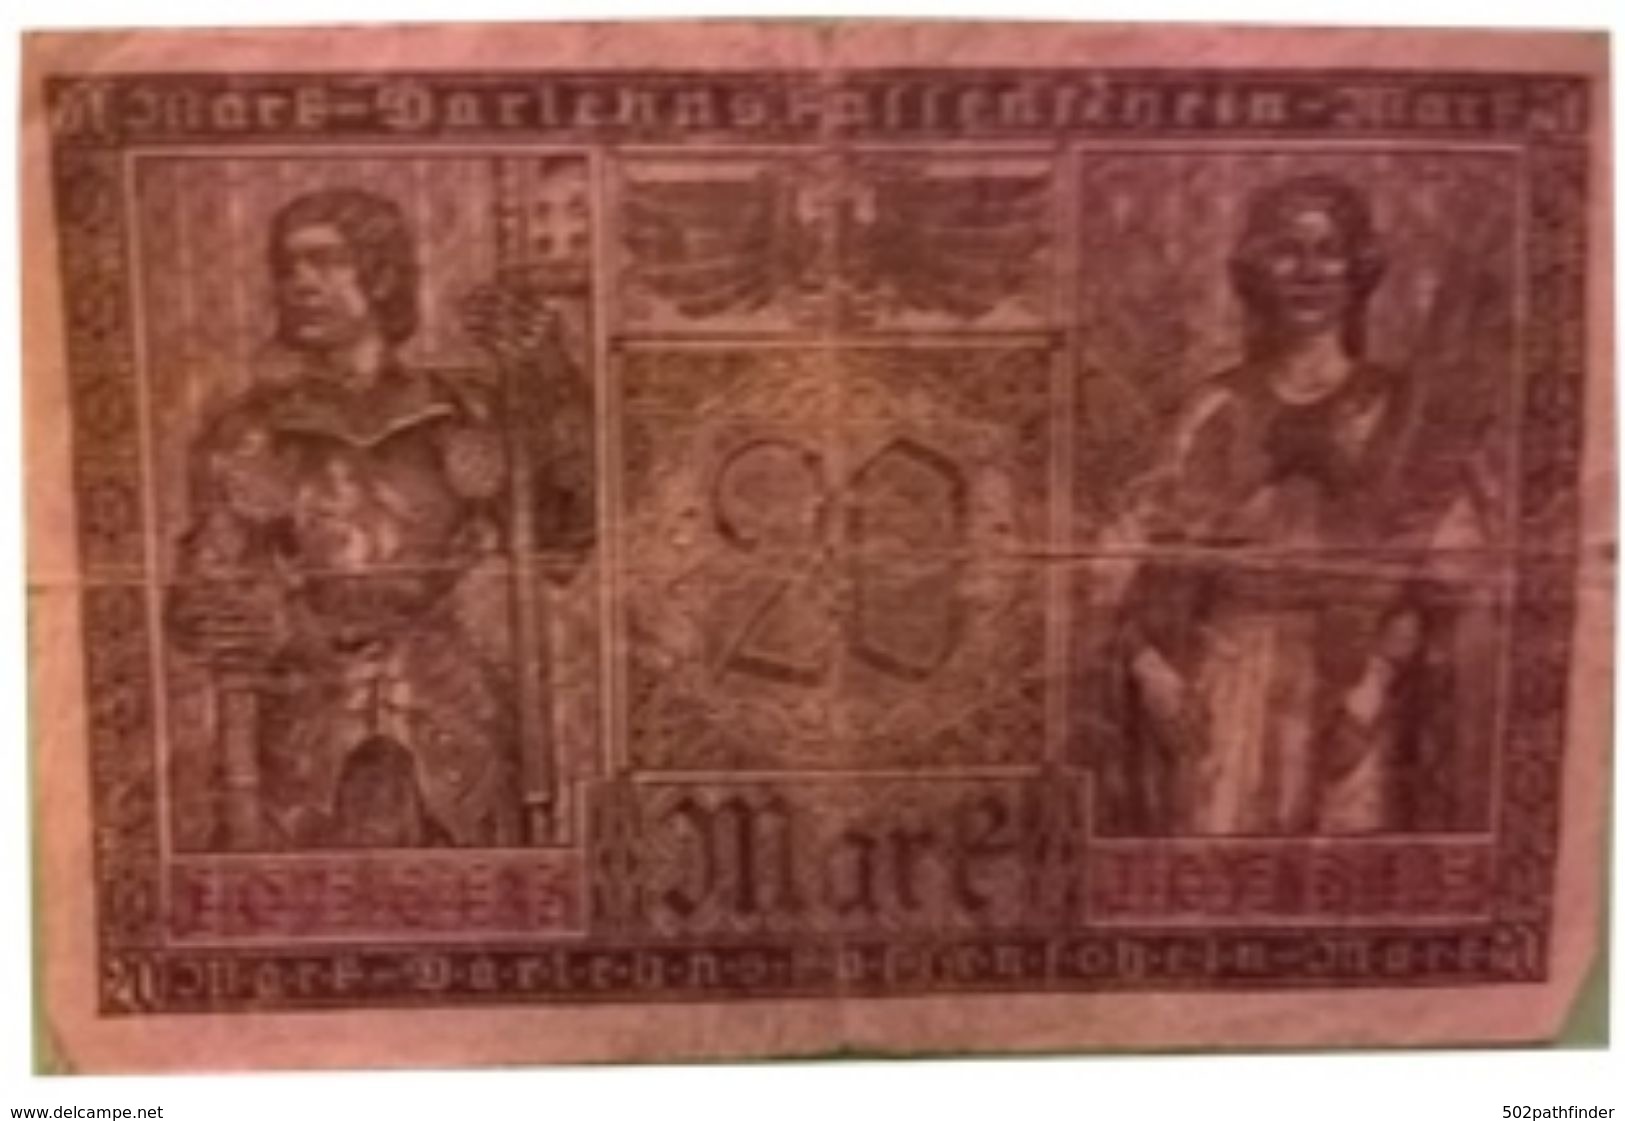 20 Zwanzig Mark Darlehnsfassenschein L6257654  Berlin 20/2/1918 Reichsschuldenverwaltung - 20 Mark